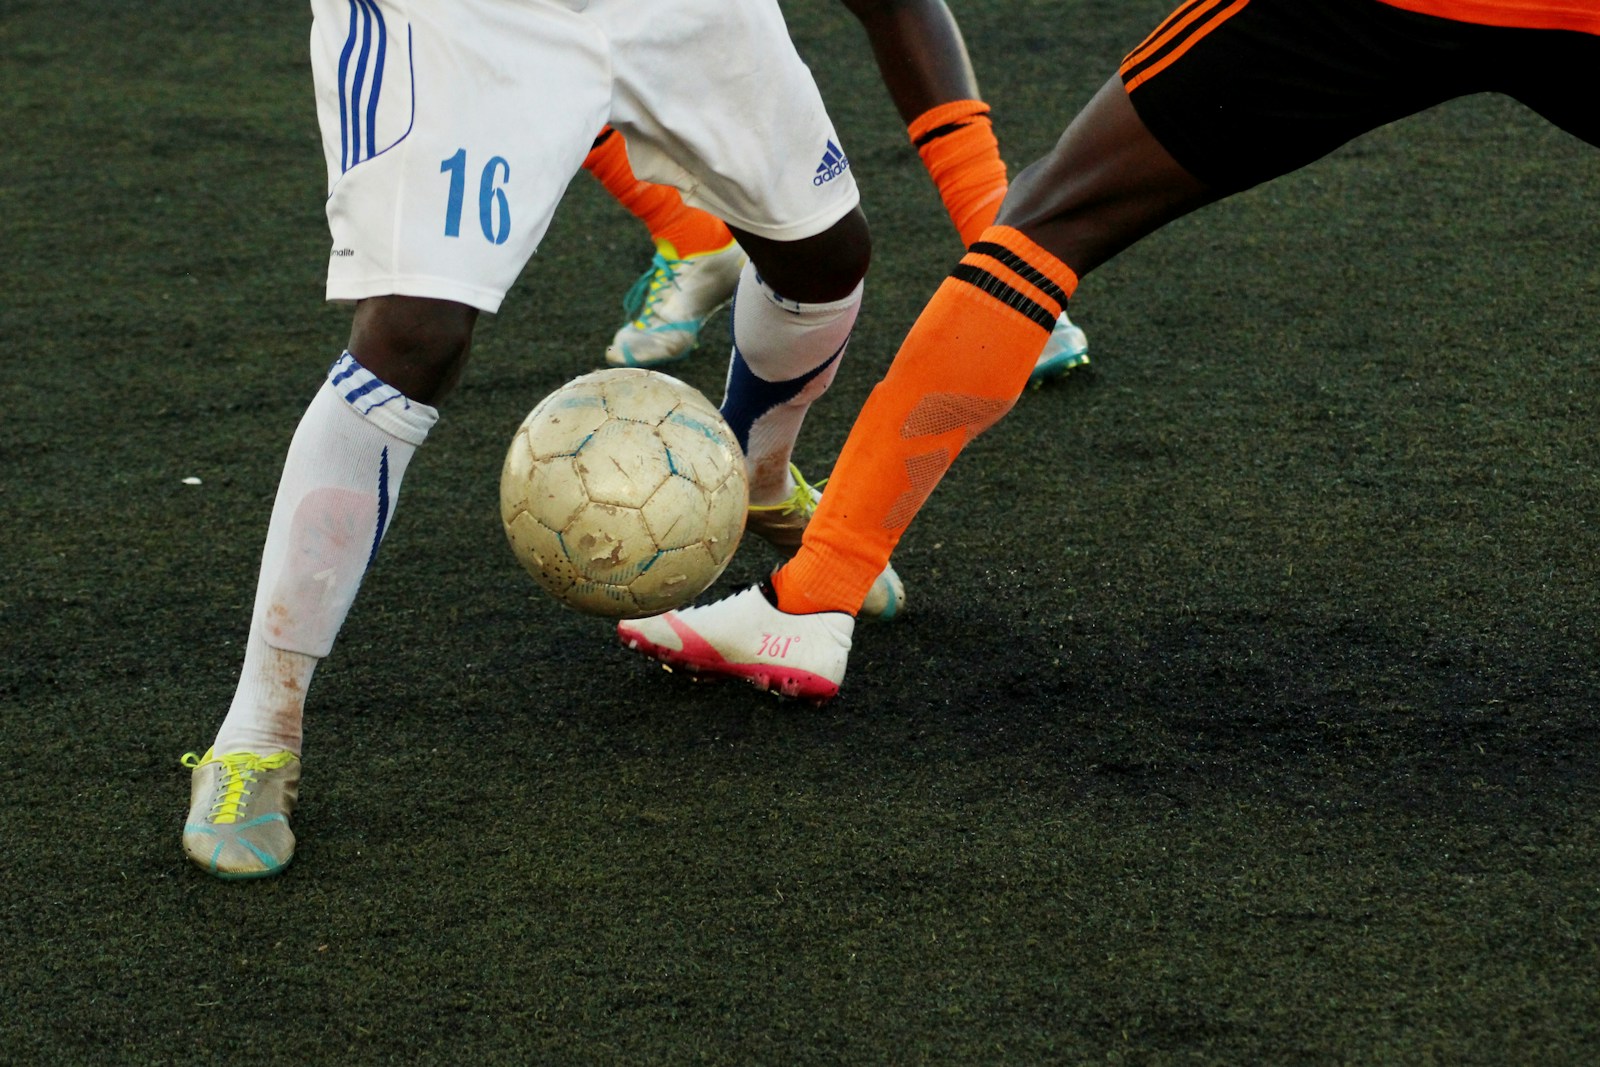 Knæstøtte og Knæbind i Fodbold: En Guide til Sundhed og Præstation